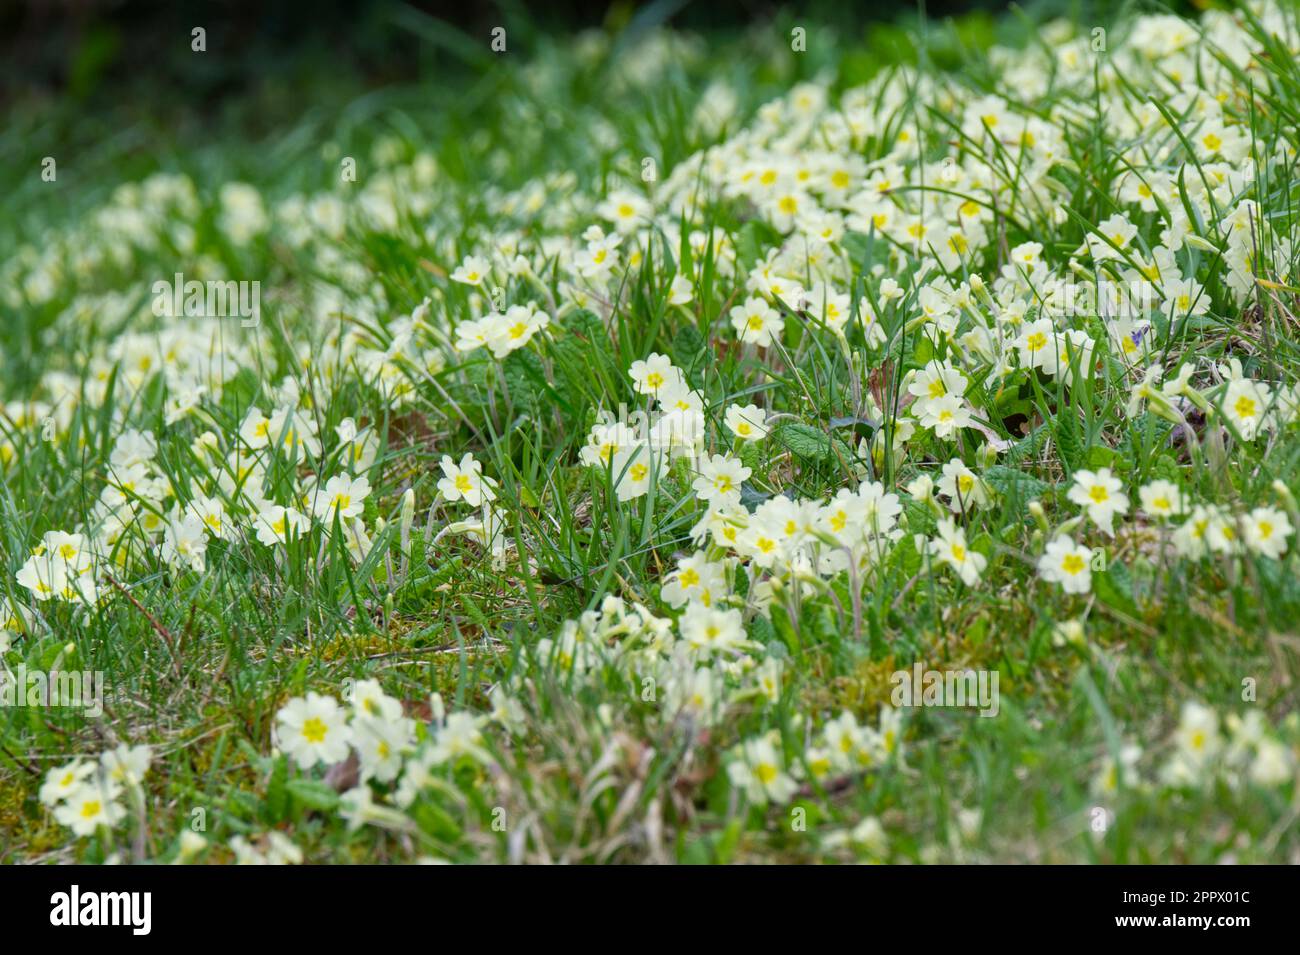 Wild primroses, Primula Vulgaris, naturalised in grass UK April Stock Photo